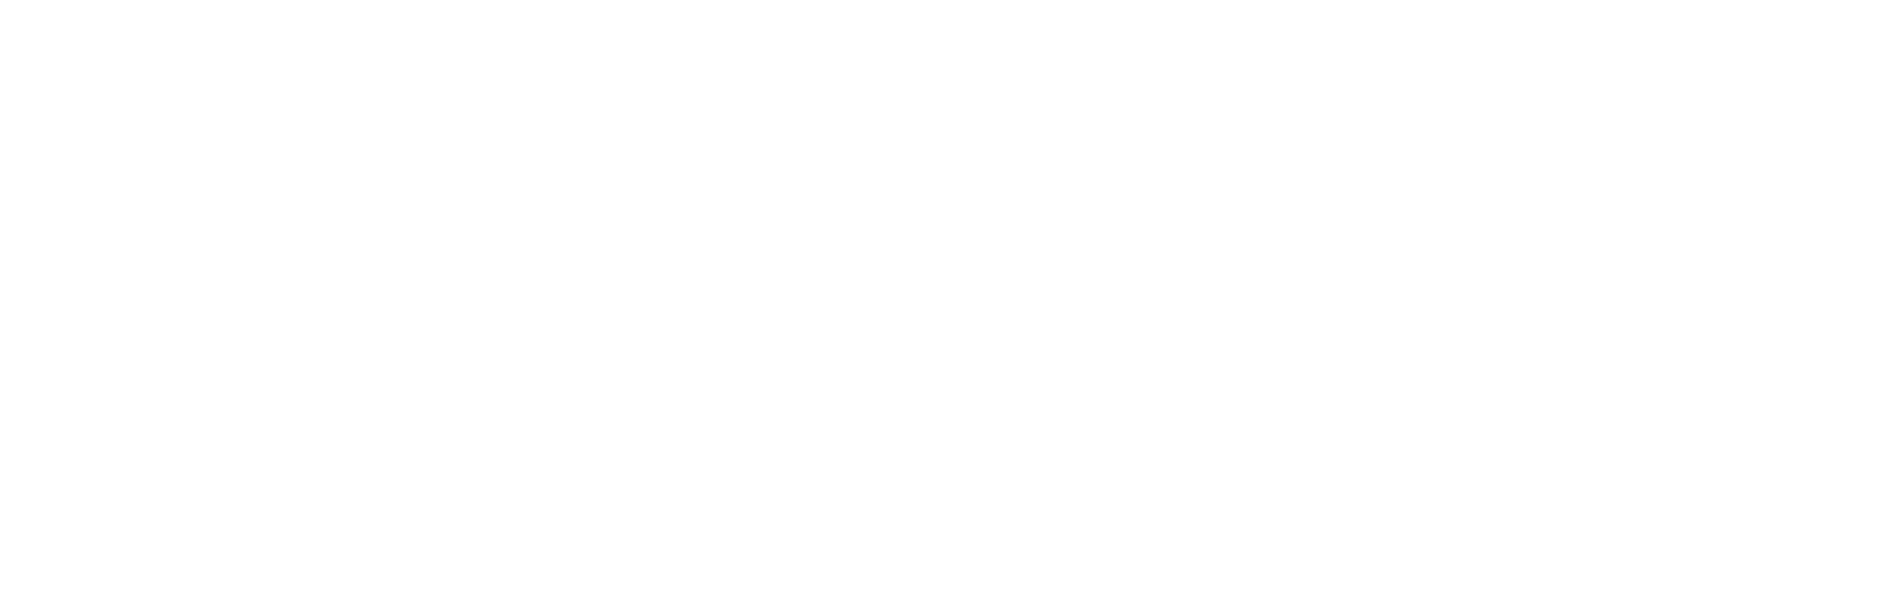 Suzuki Sialkot City Motors